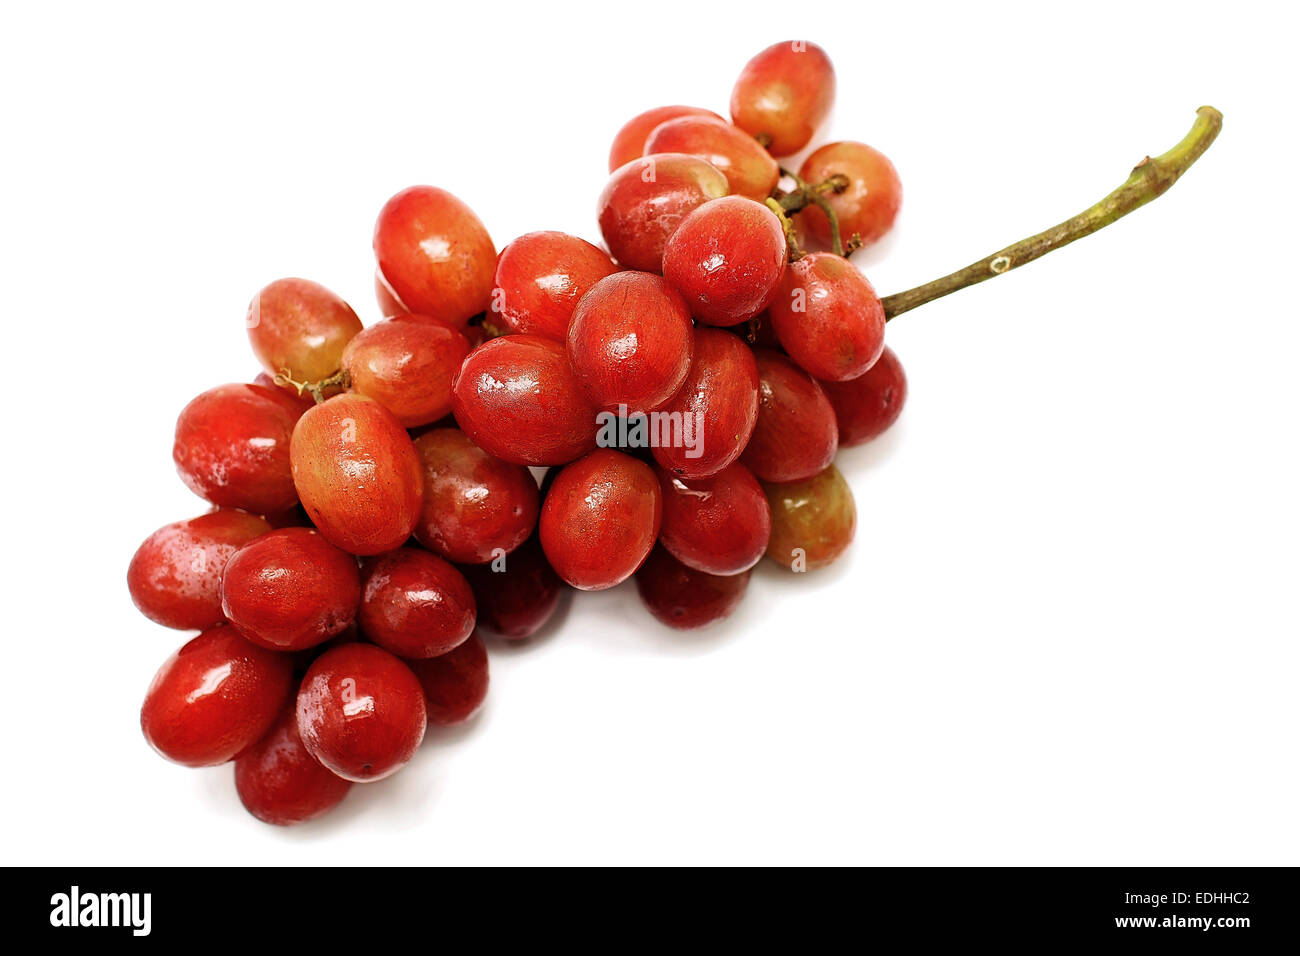 Mosti di uve fresche frutto isolato su sfondo bianco Foto Stock